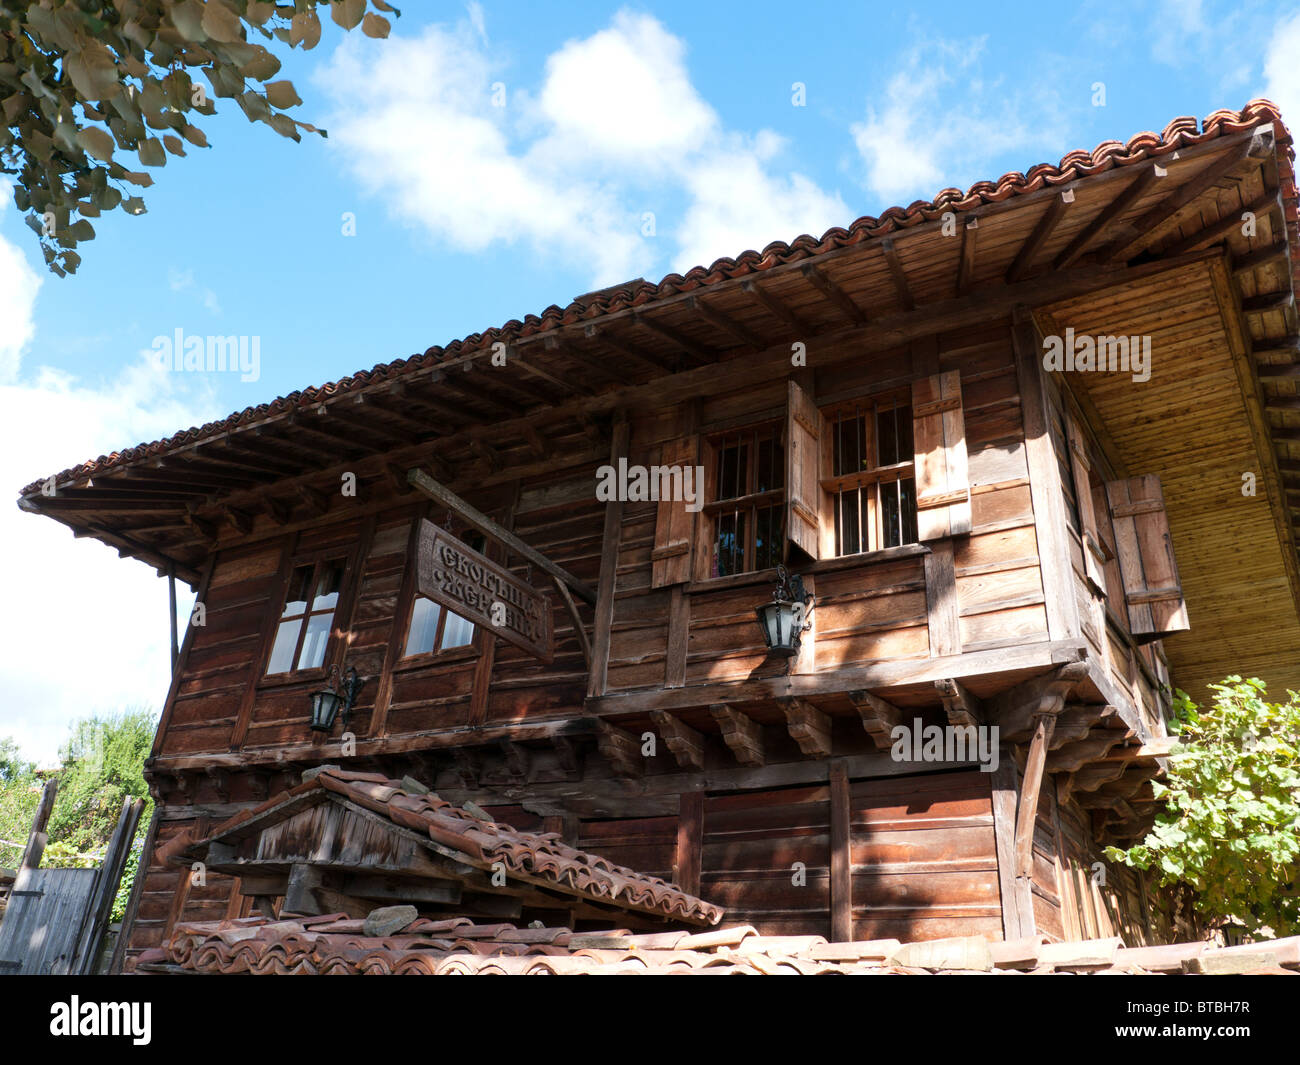 Maison traditionnelle en bois dans le vieux village préservé d'Zhervana, Bulgarie, Balkans, Blue Mountains Banque D'Images